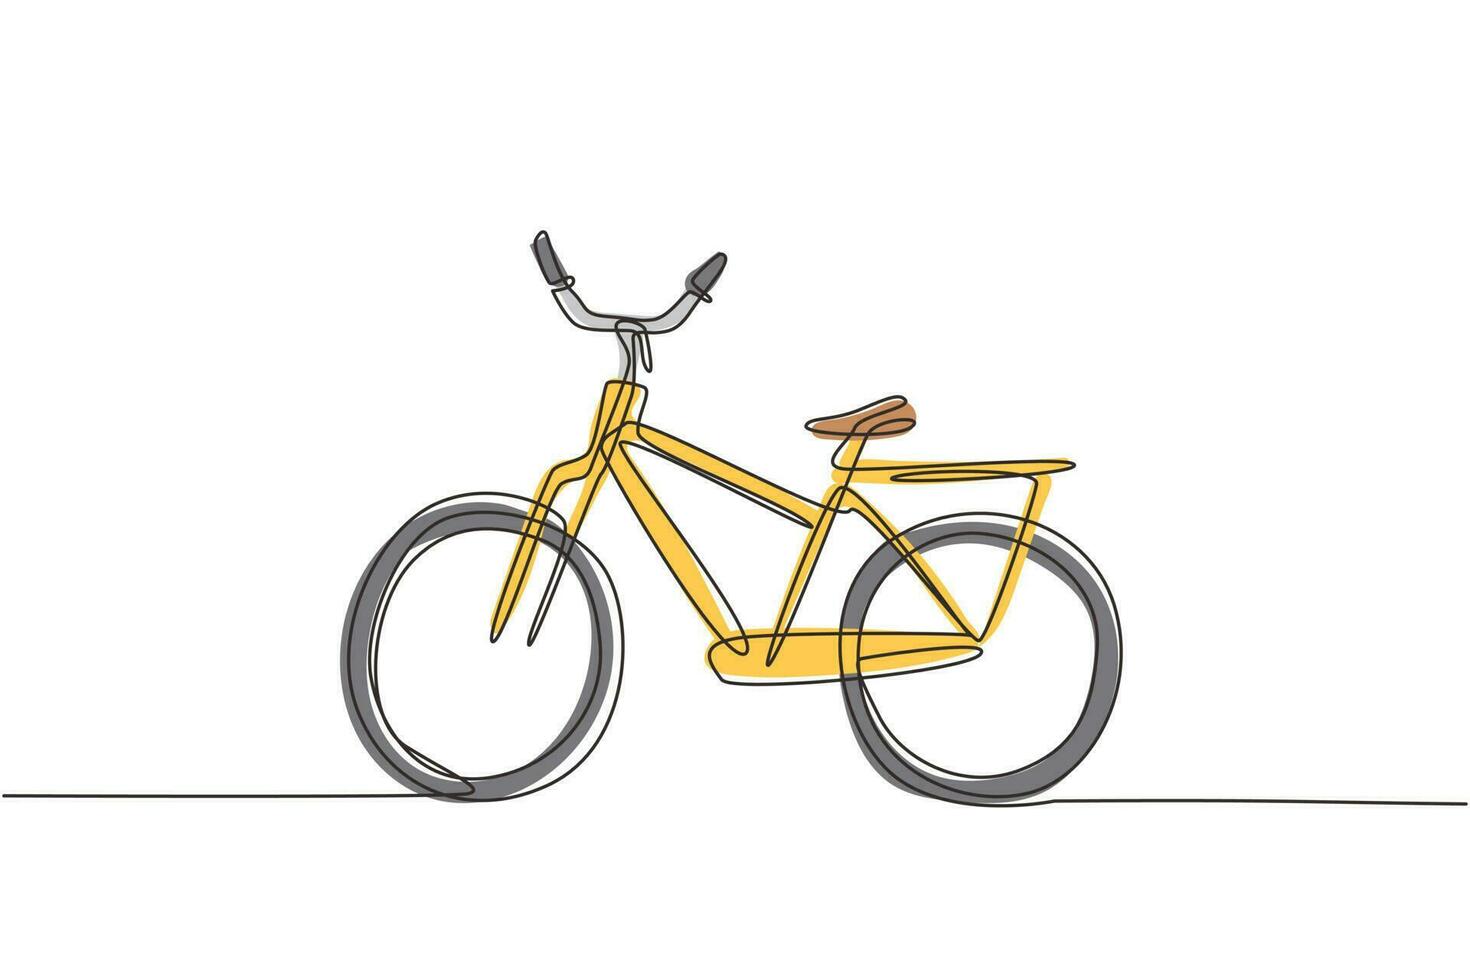 enda en rad ritning klassisk stadscykel, ekologisk sporttransport. avkopplande cykel för gemenskap. hälsosam livsstil genom att cykla. modern kontinuerlig linje rita design grafisk vektorillustration vektor